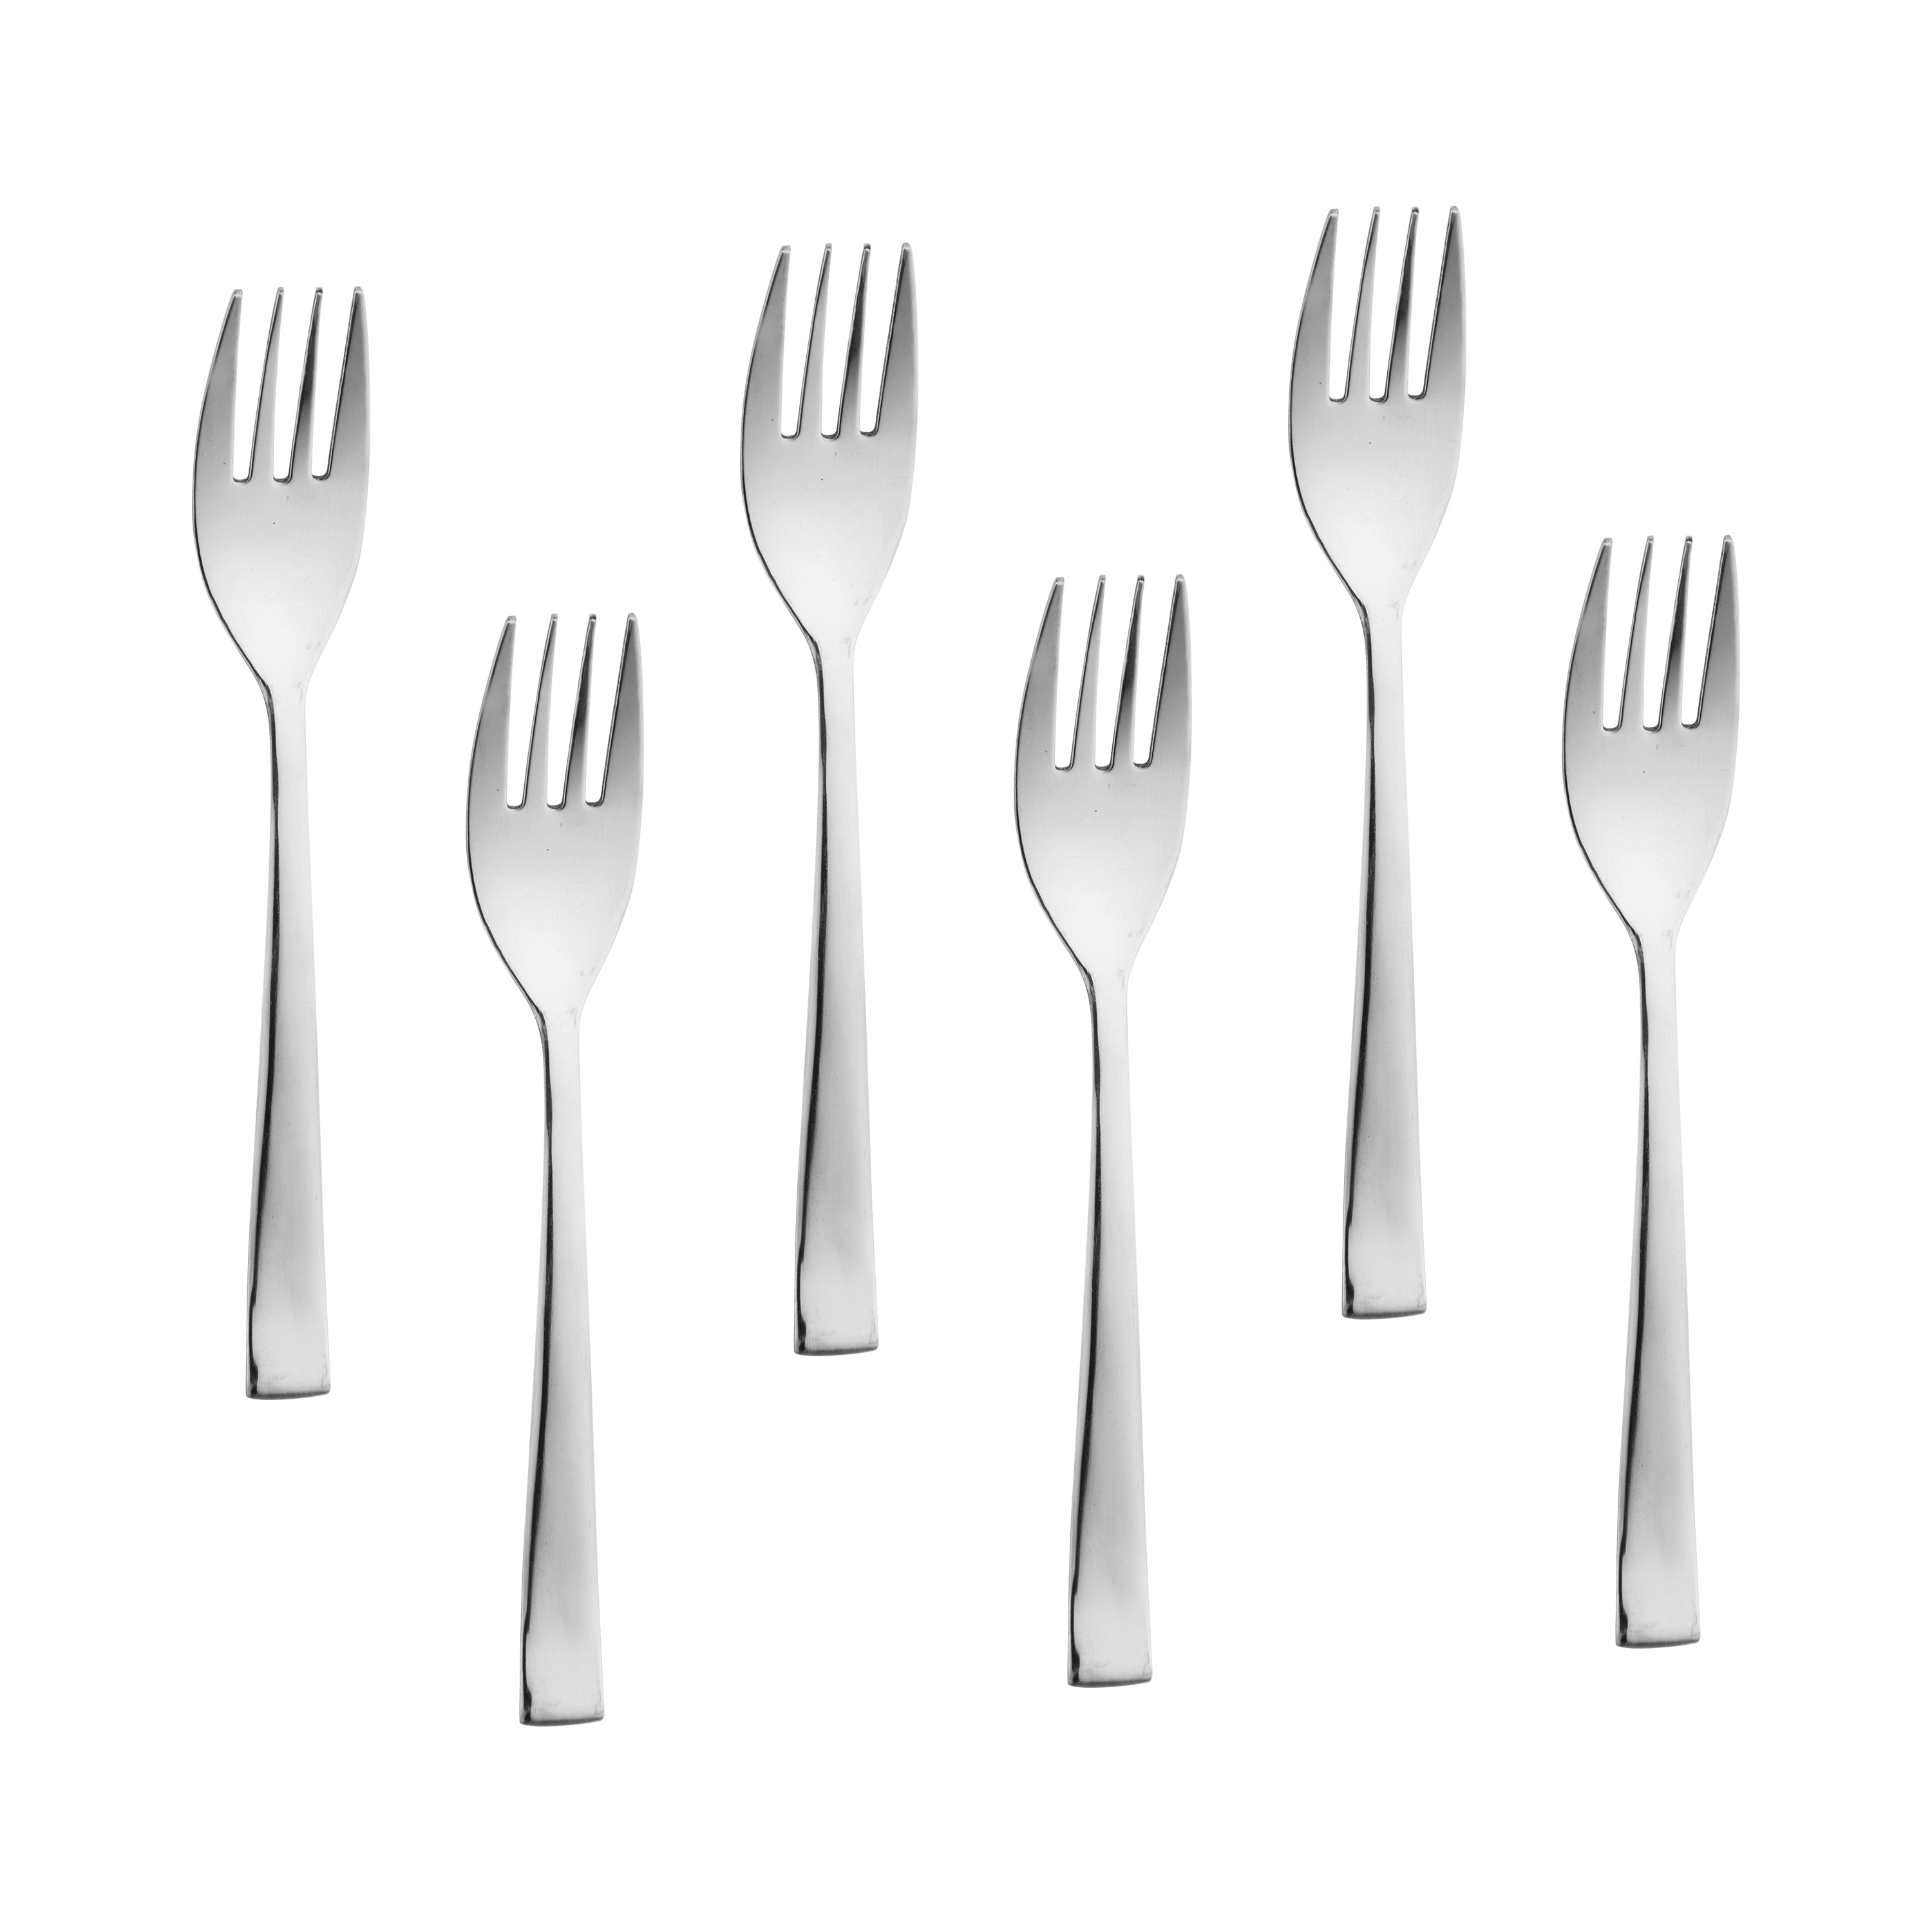 Arias by Lara Dutta Fiesta Dinner Fork Set of 6 (Silver)